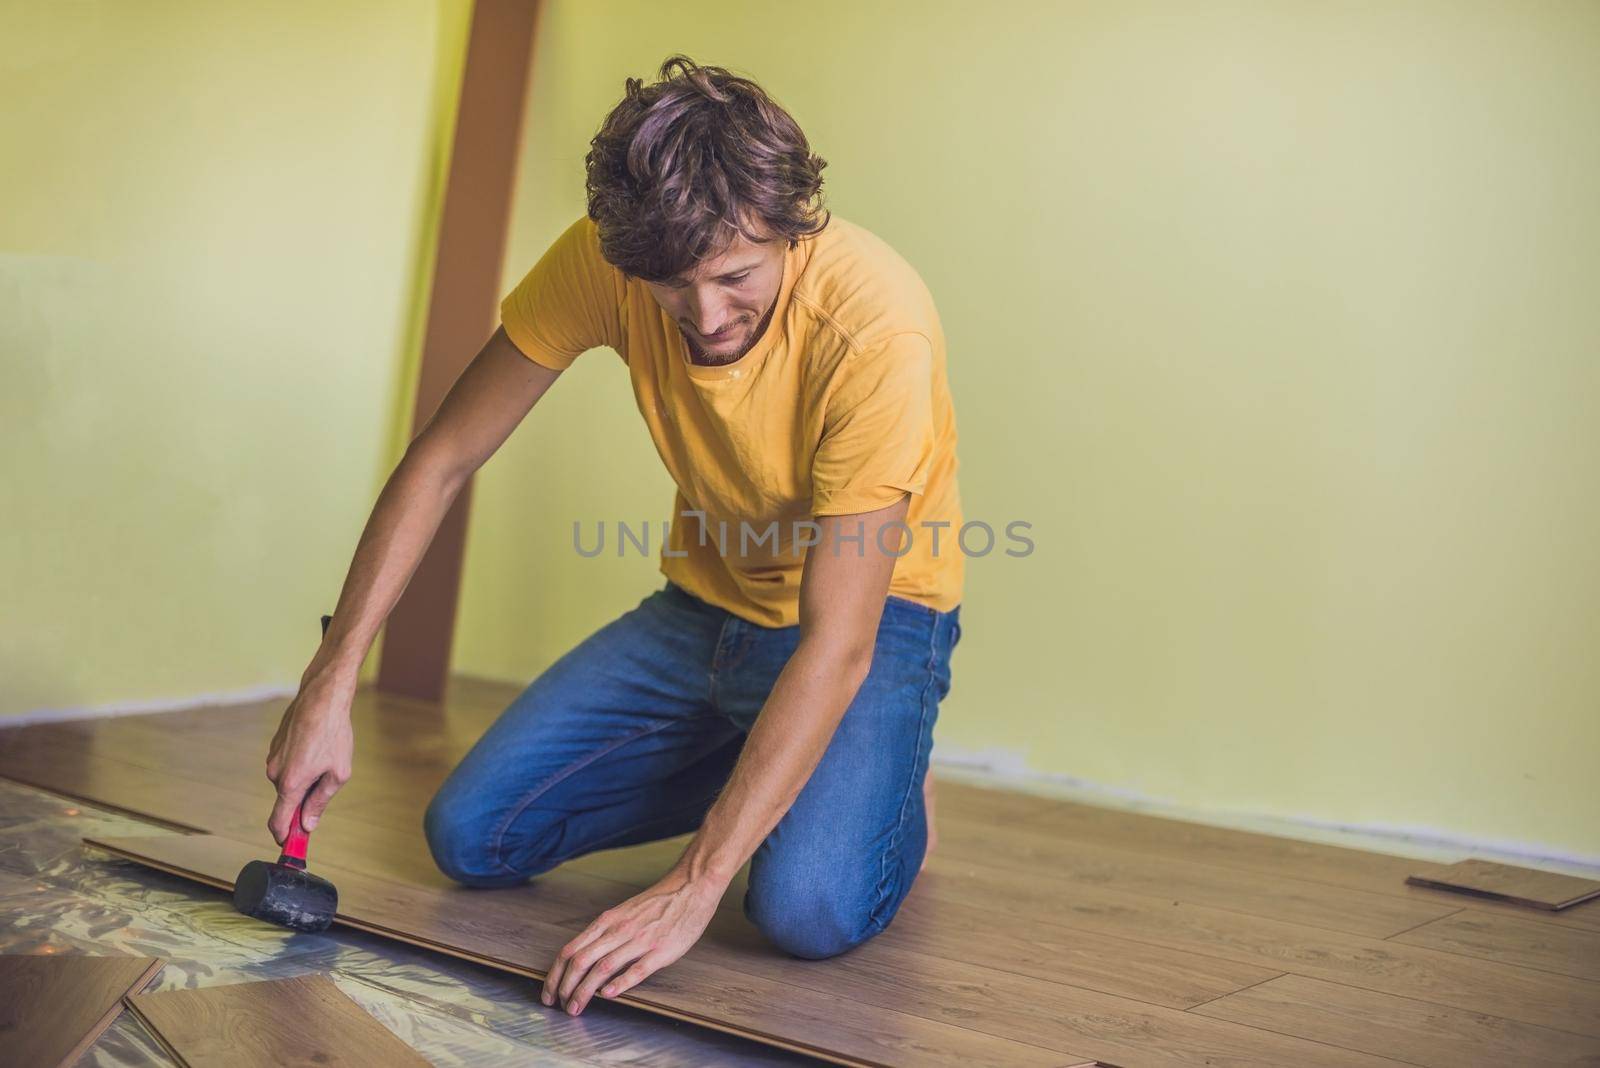 Man installing new wooden laminate flooring. infrared floor heating system under laminate floor by galitskaya